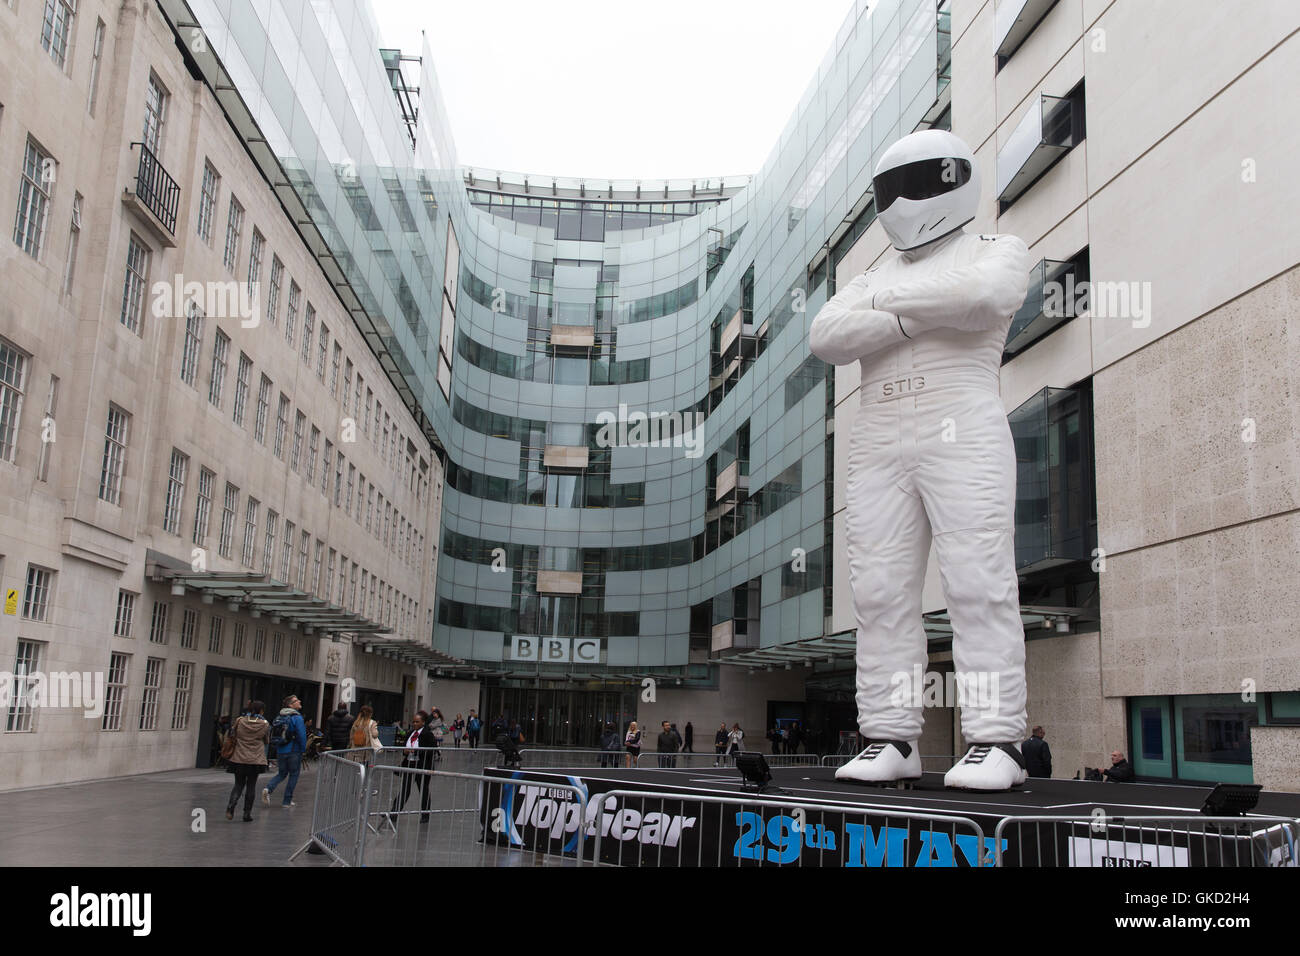 Statua gigante di The Stig sorge nella piazza della BBC studios per promuovere la marcia superiore a partire dal 29 maggio con: gigantesca statua di The Stig dove: Londra, Regno Unito quando: 18 Maggio 2016 Foto Stock